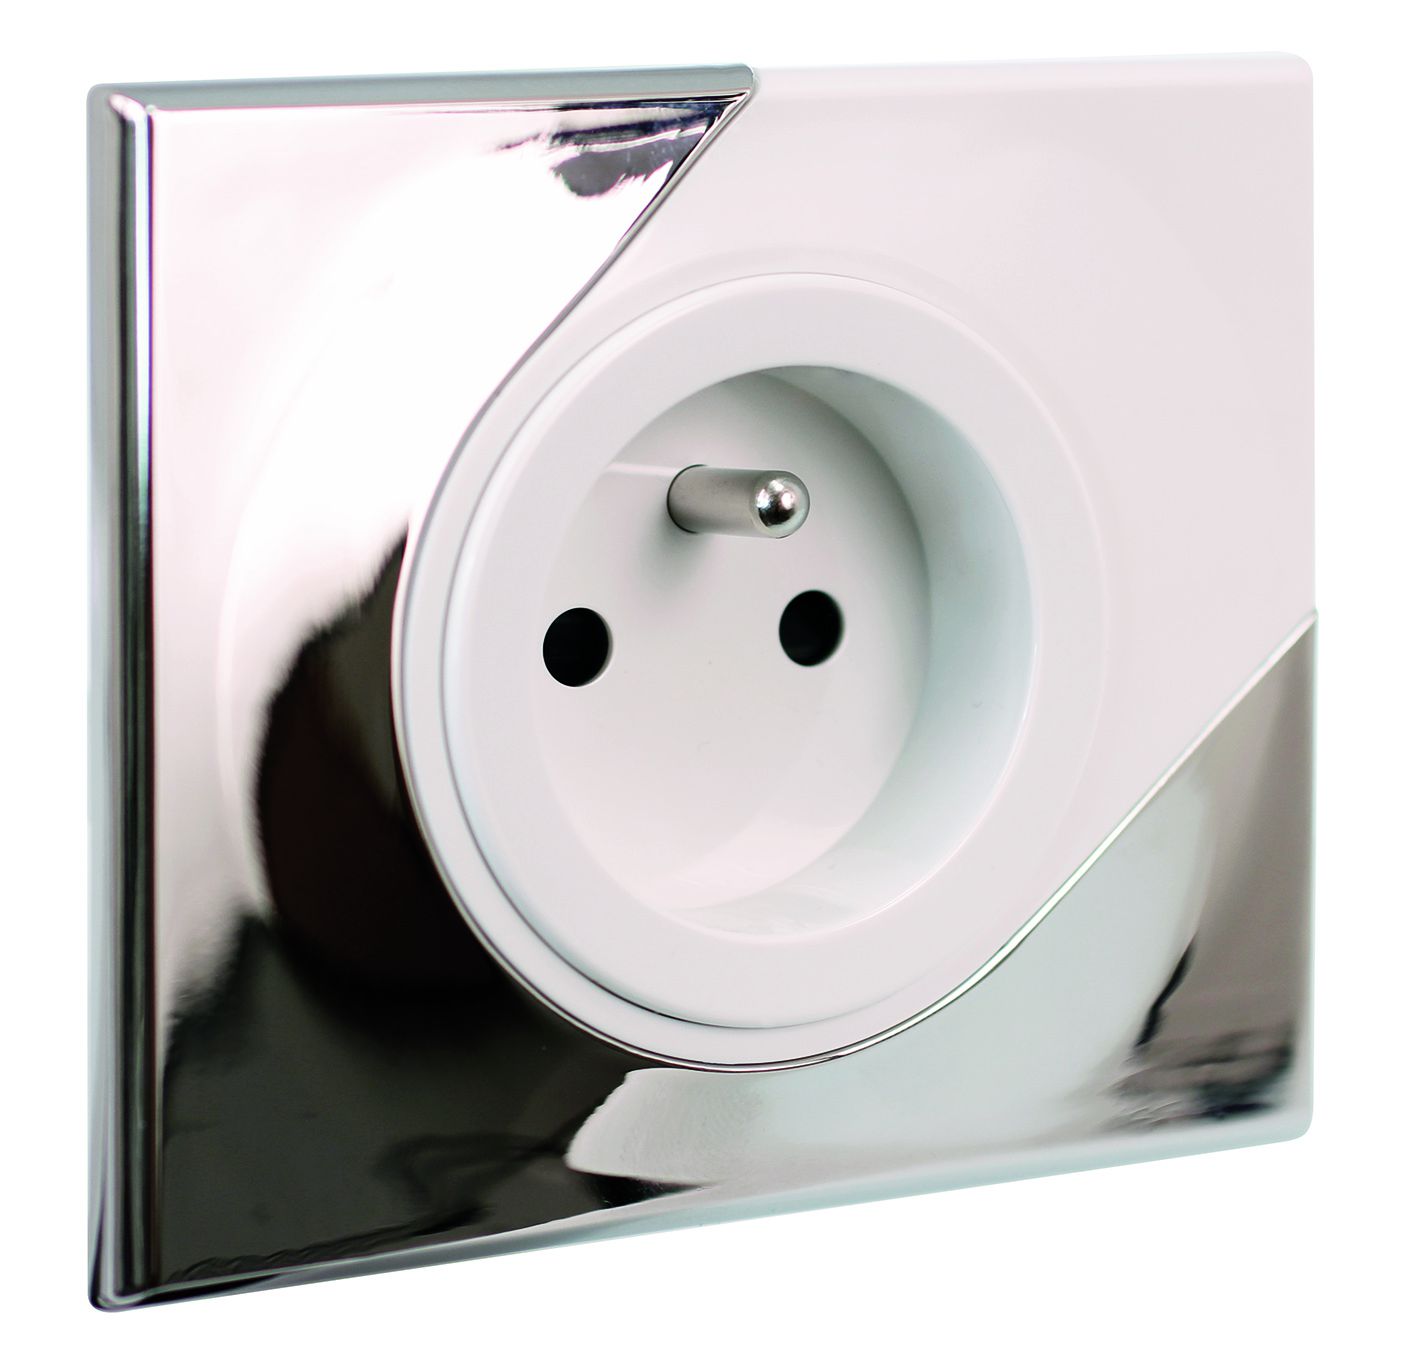 Prise Eu'ohm Comète finition Mirror ( aluminium poli miroir + ABS blanc laqué)sur Electrik.fr